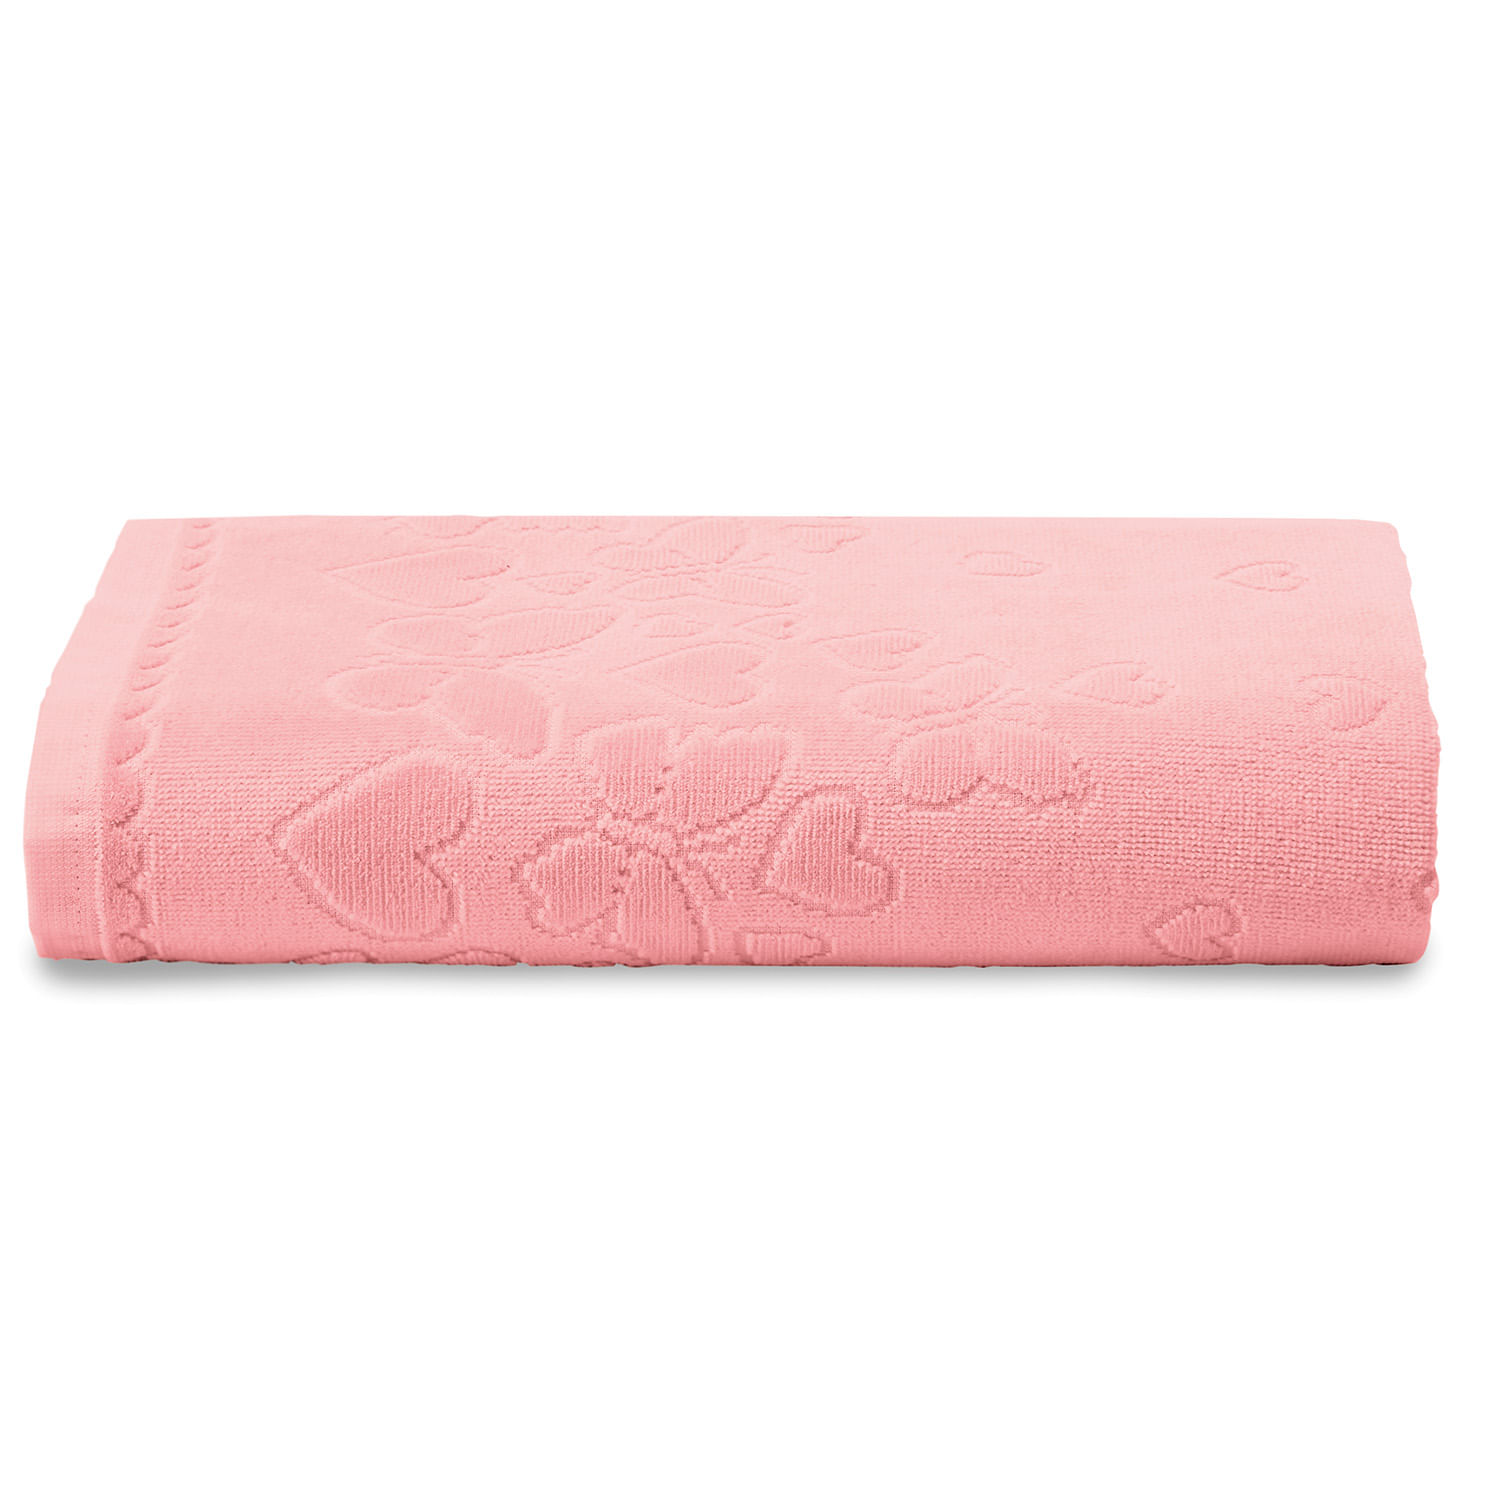 Toalha de Banho Passione Toque Macio Detalhes Clássicos ROSE LUXO - Tessi